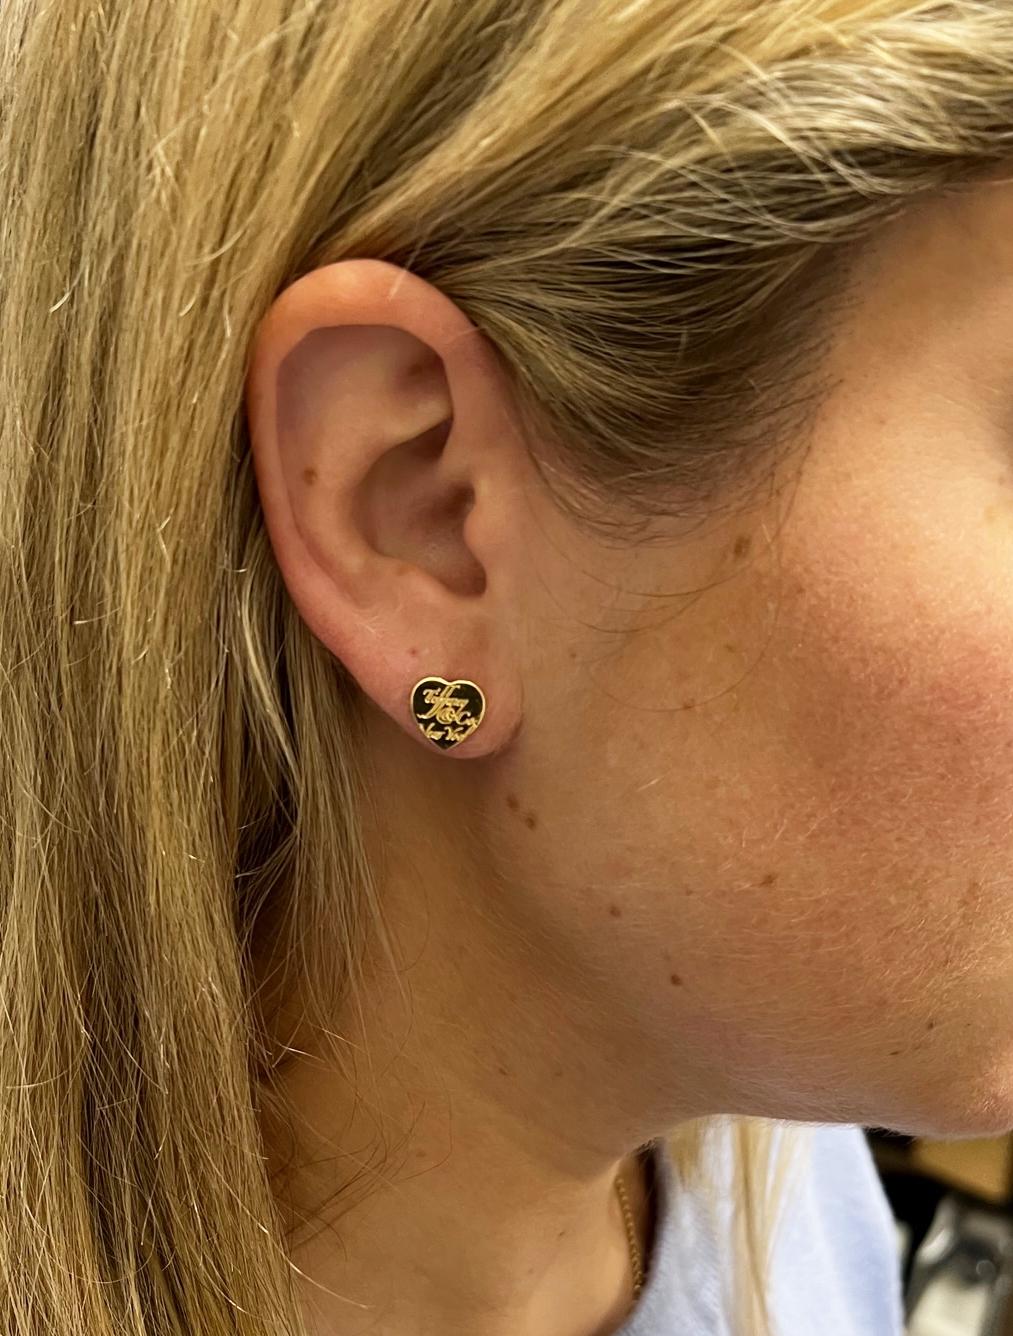 tiffany heart shaped earrings